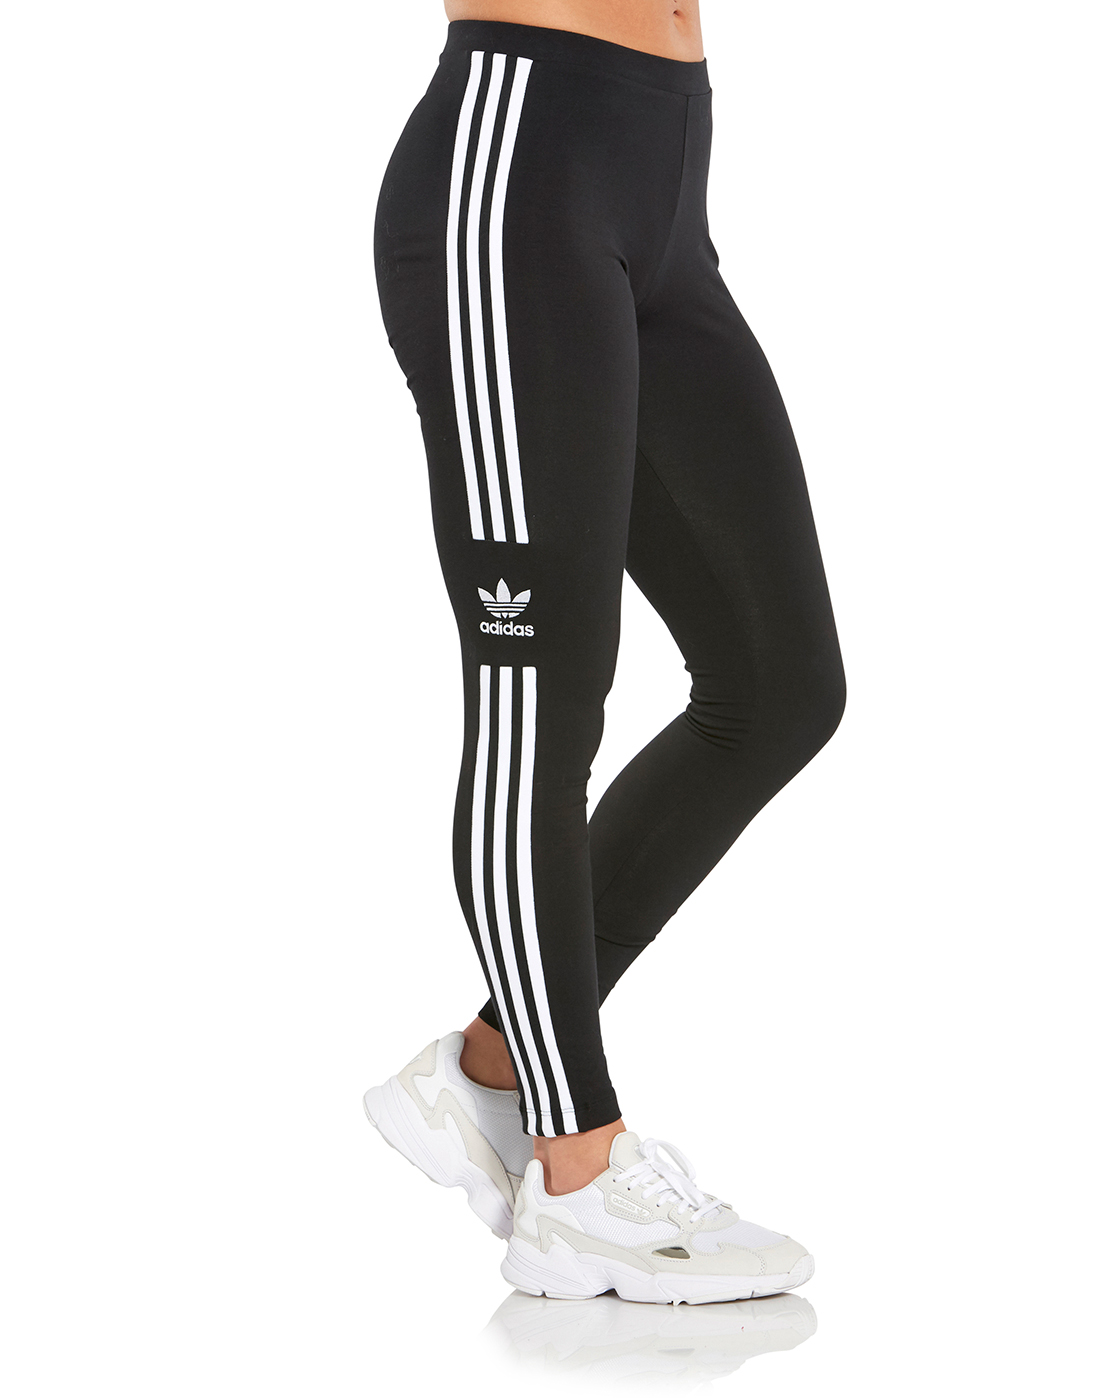 adidas trefoil leggings black and white